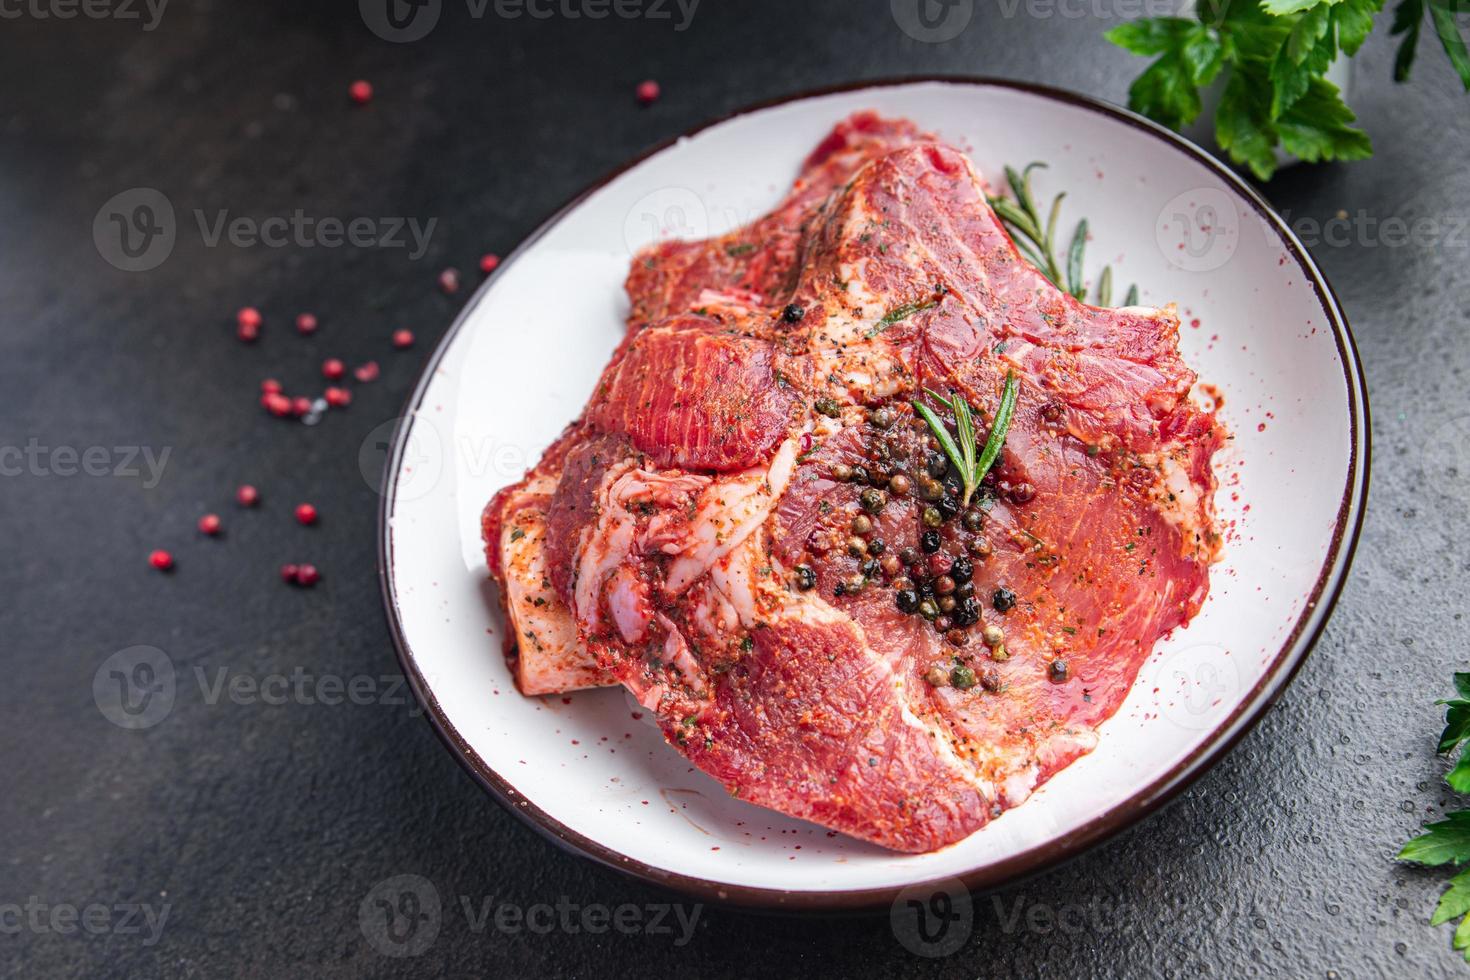 rauw vlees biefstuk varkensvlees vers rundvlees maaltijd eten snack op tafel kopieer ruimte foto